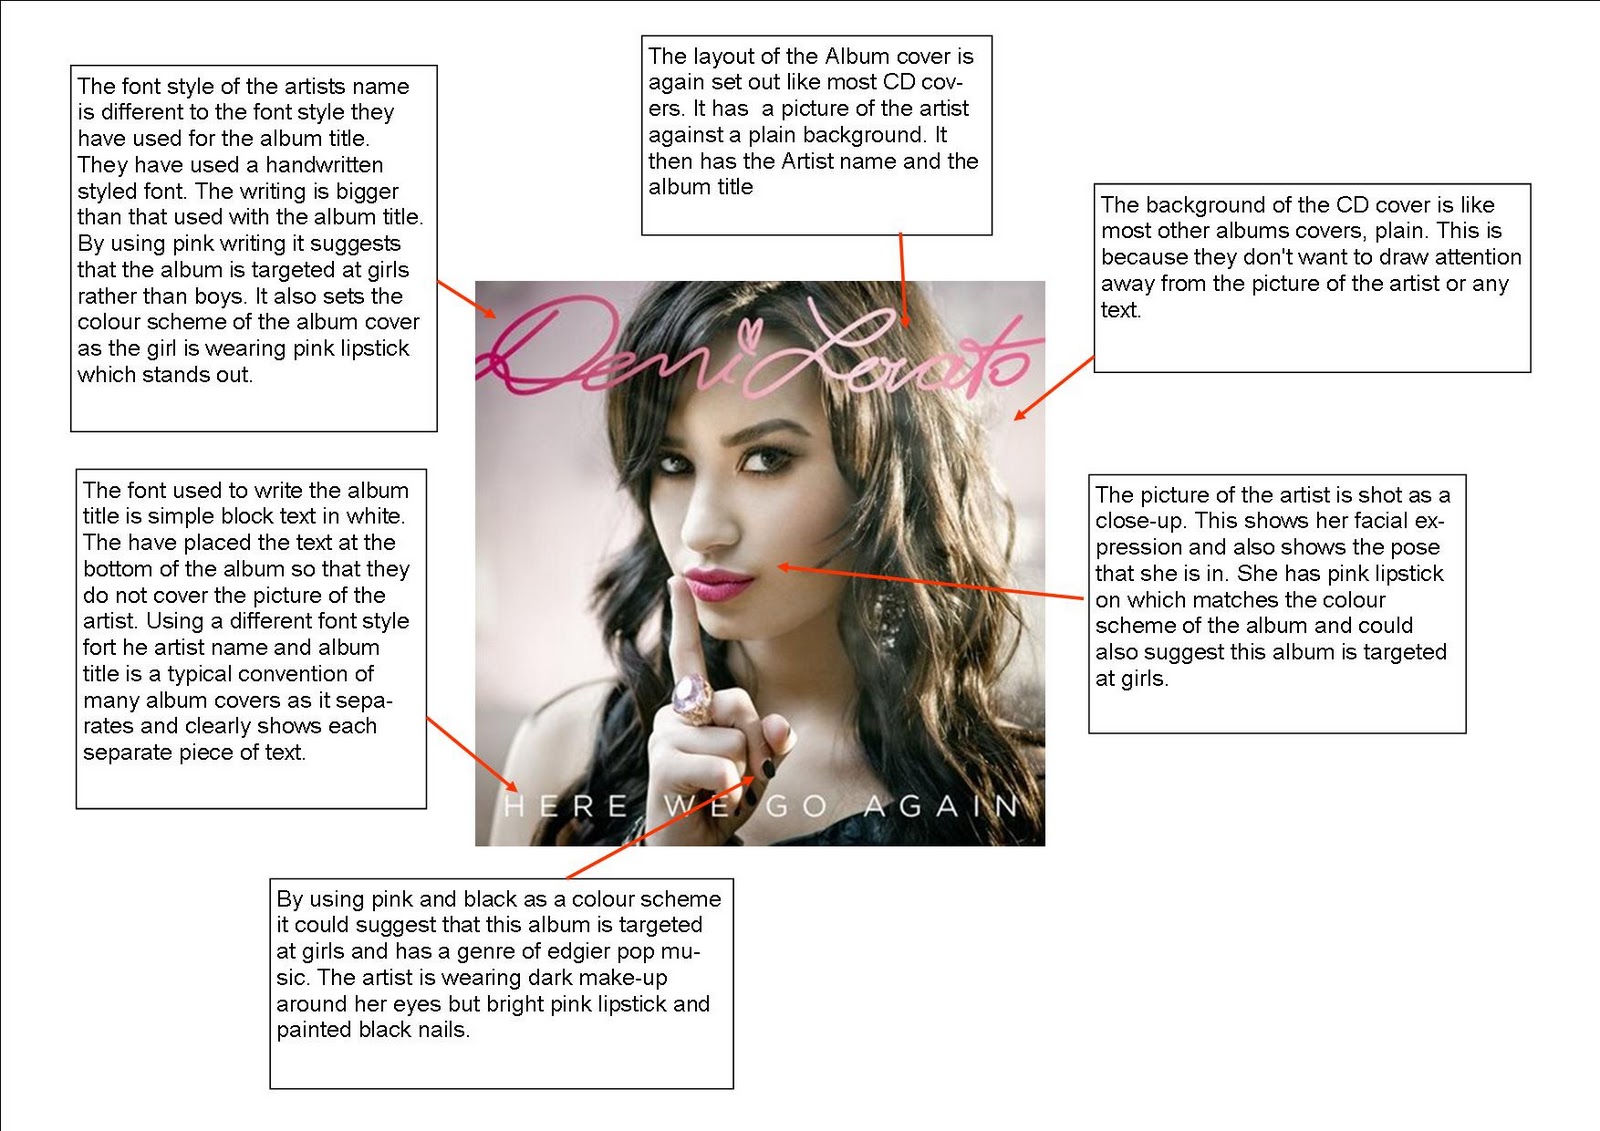 http://4.bp.blogspot.com/_v5gNki0U9Yw/TP9Rd3ZD59I/AAAAAAAAAQU/pRWodmswDbc/s1600/Demi+Lovato+Annotations.jpg